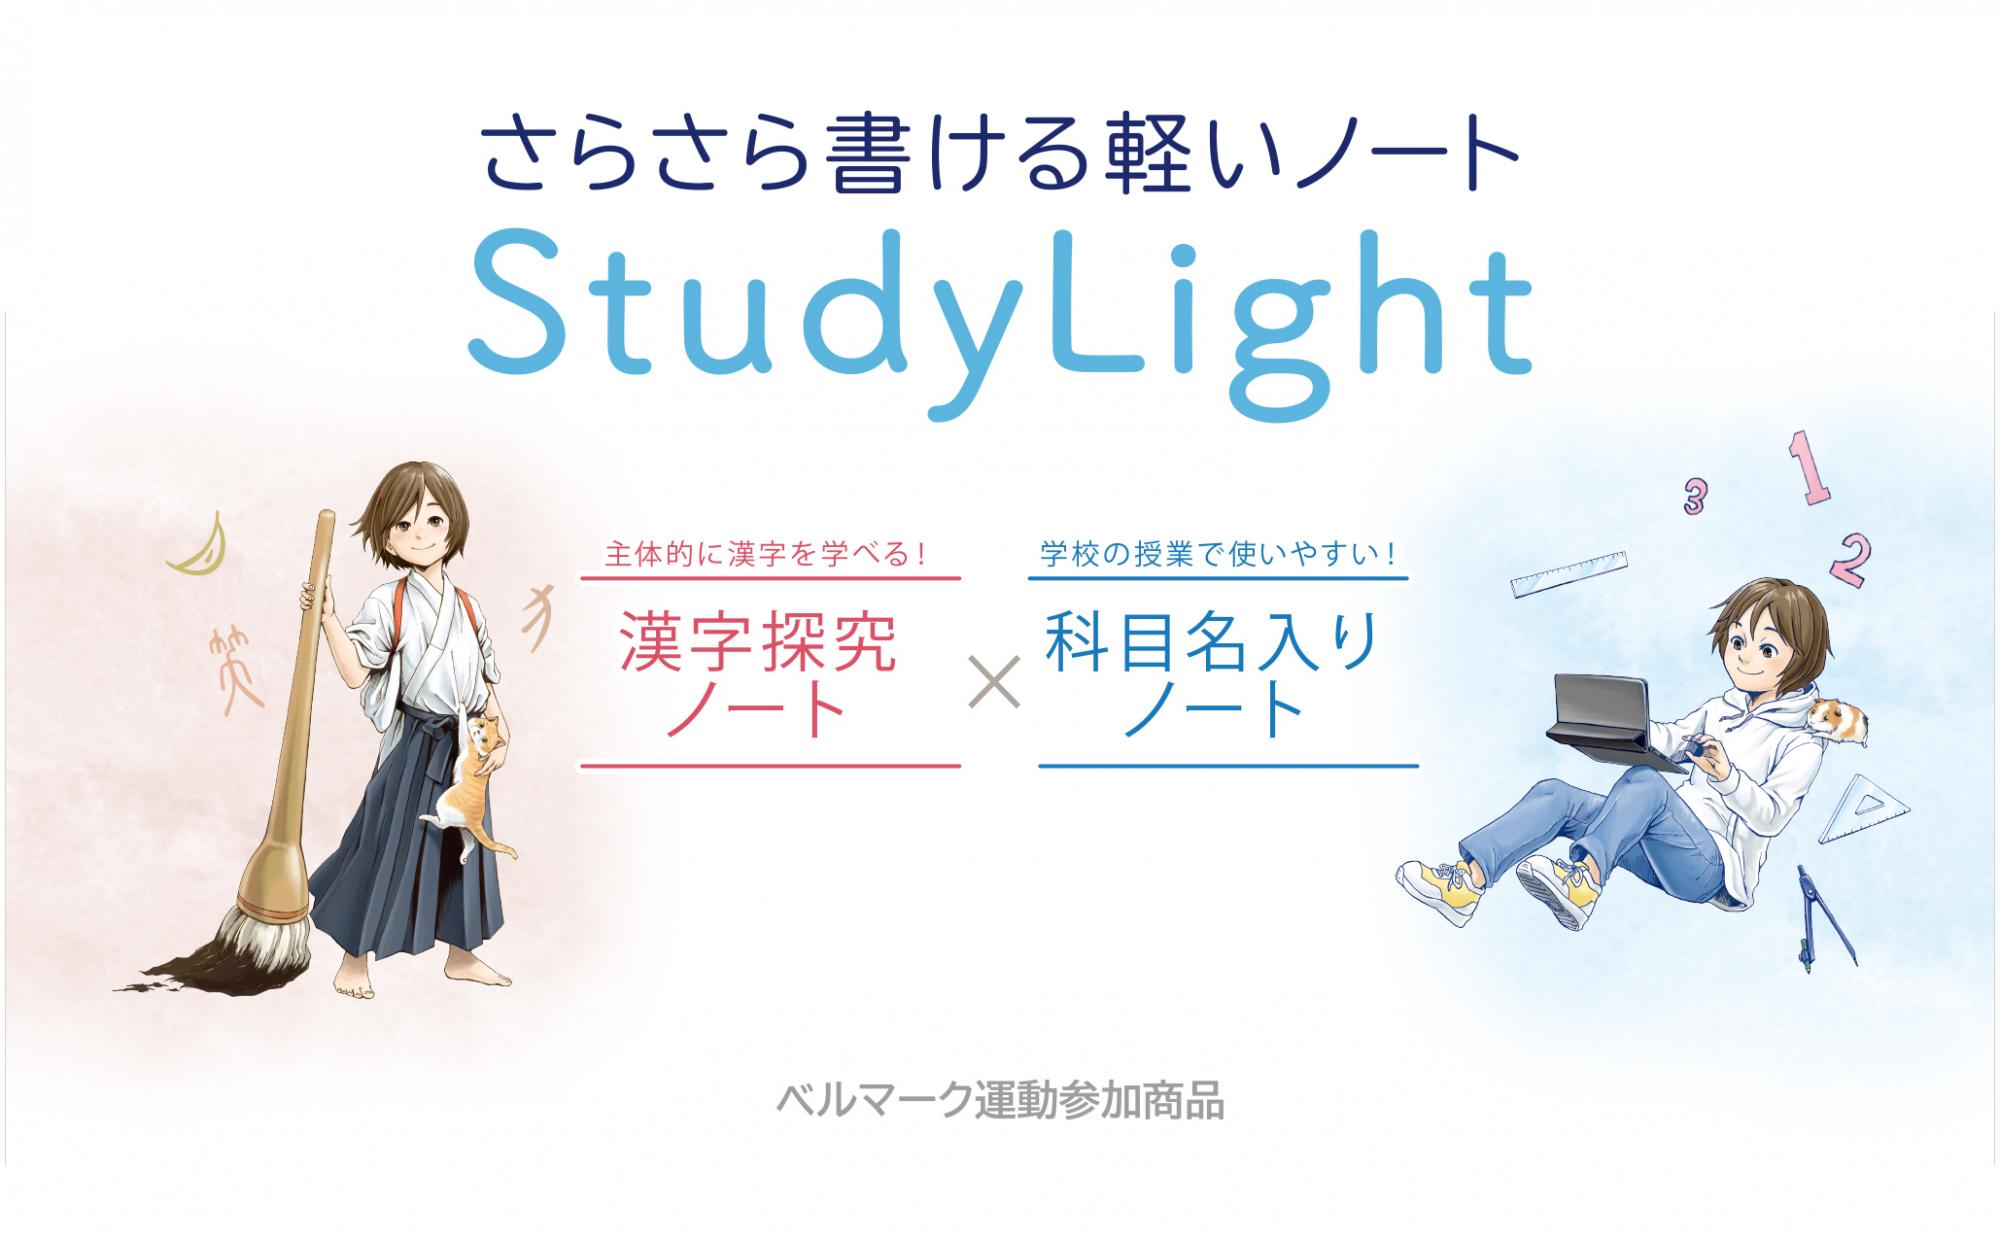 Study Light